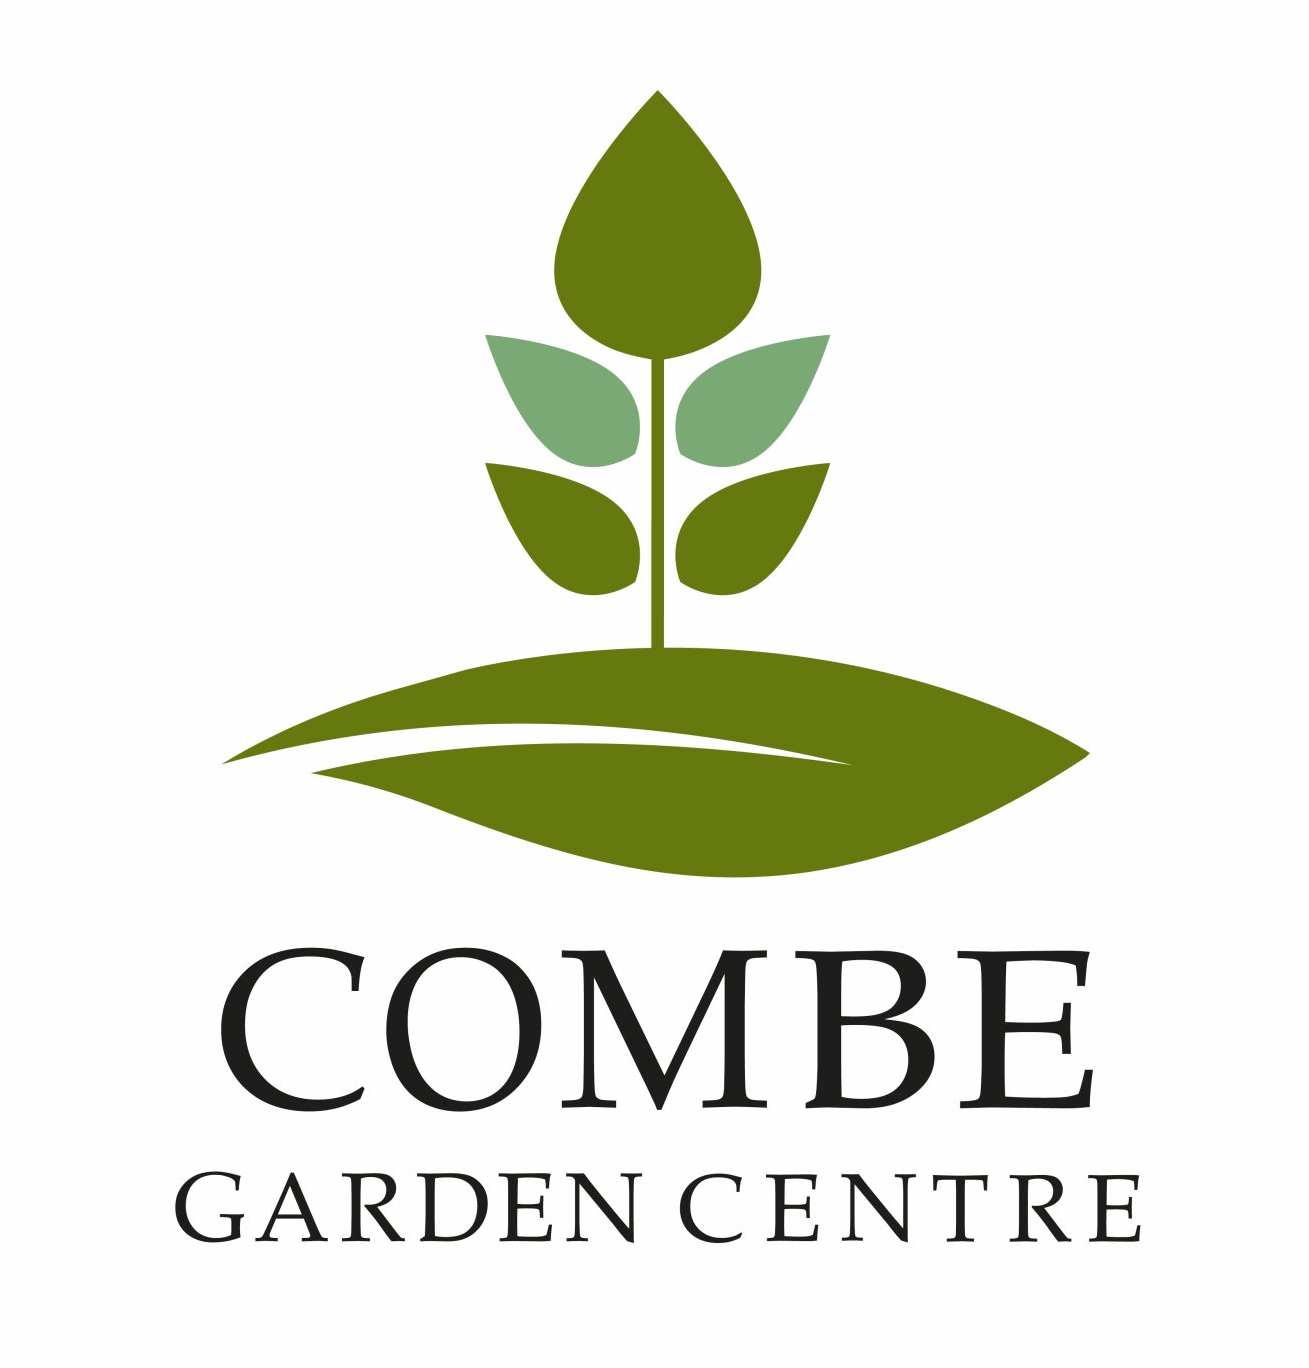 Combe Garden Center logo